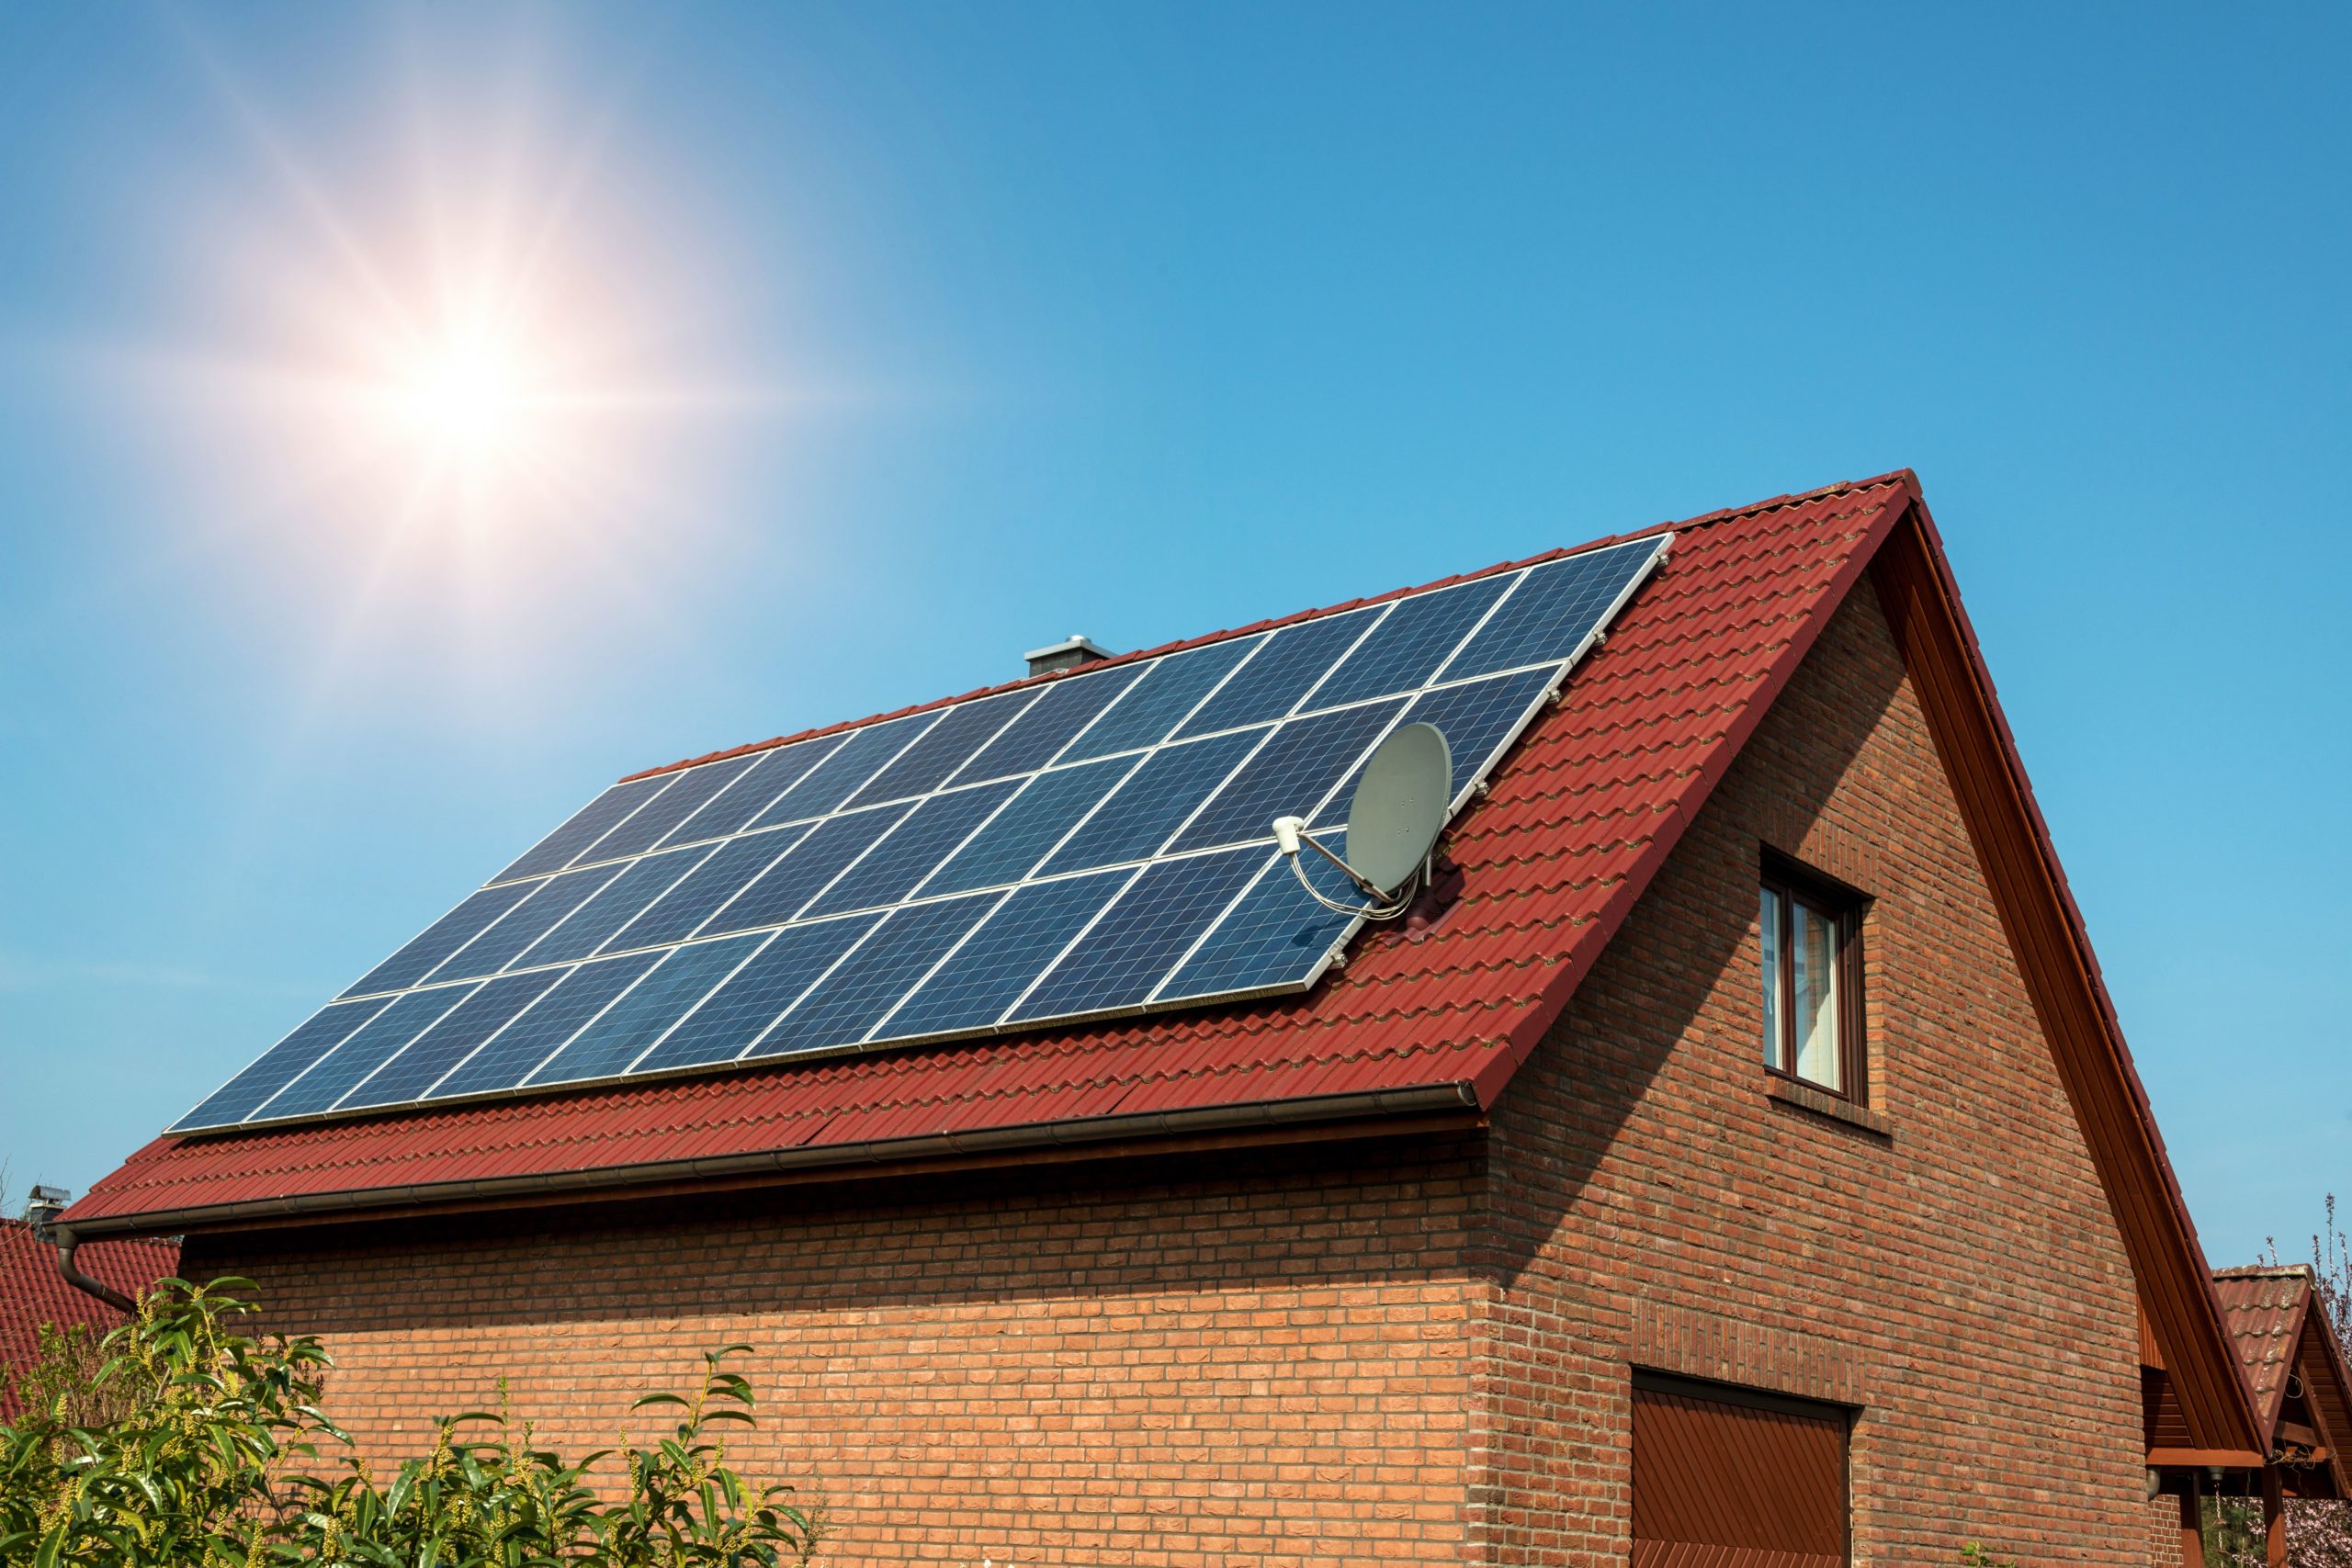 Dimensionamento de sistema fotovoltaico para projetos residenciais,  comerciais e industriais - Grupo E4